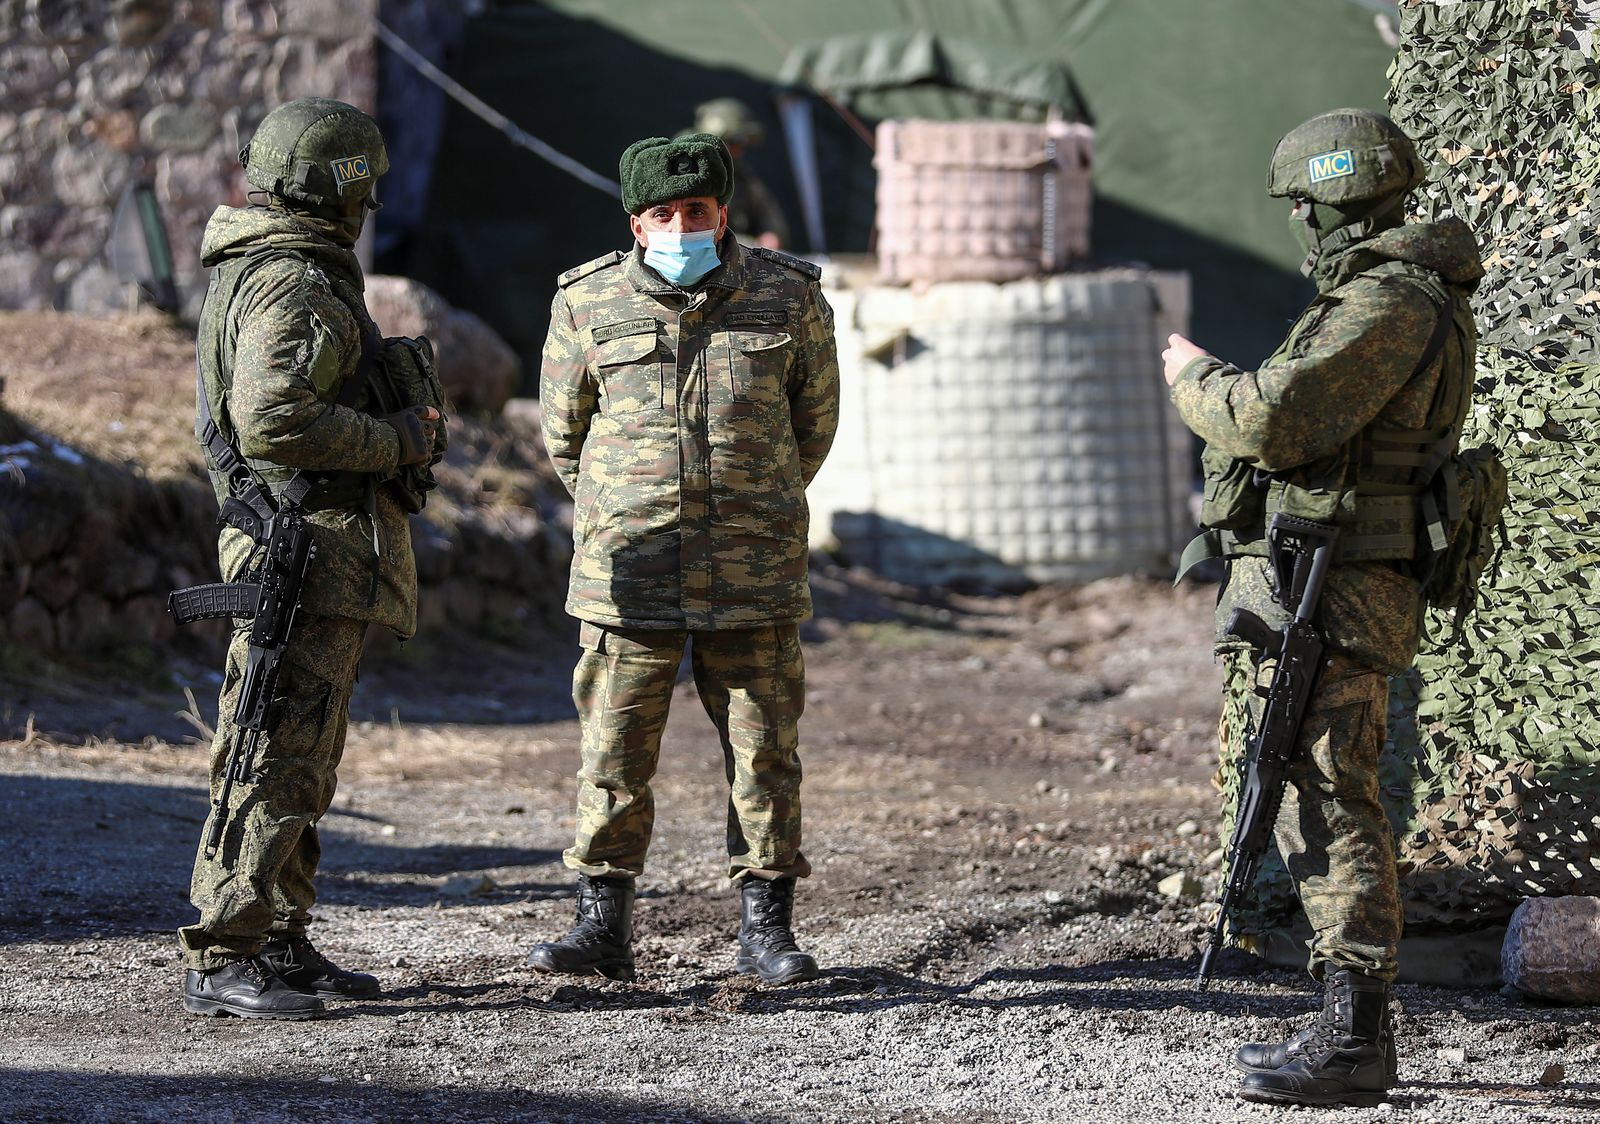 ضابط في الجيش الأذربيجاني يتحدث مع جنديين من قوات حفظ السلام الروسية في منطقة كالباجار - 21 ديسمبر 2020 - REUTERS